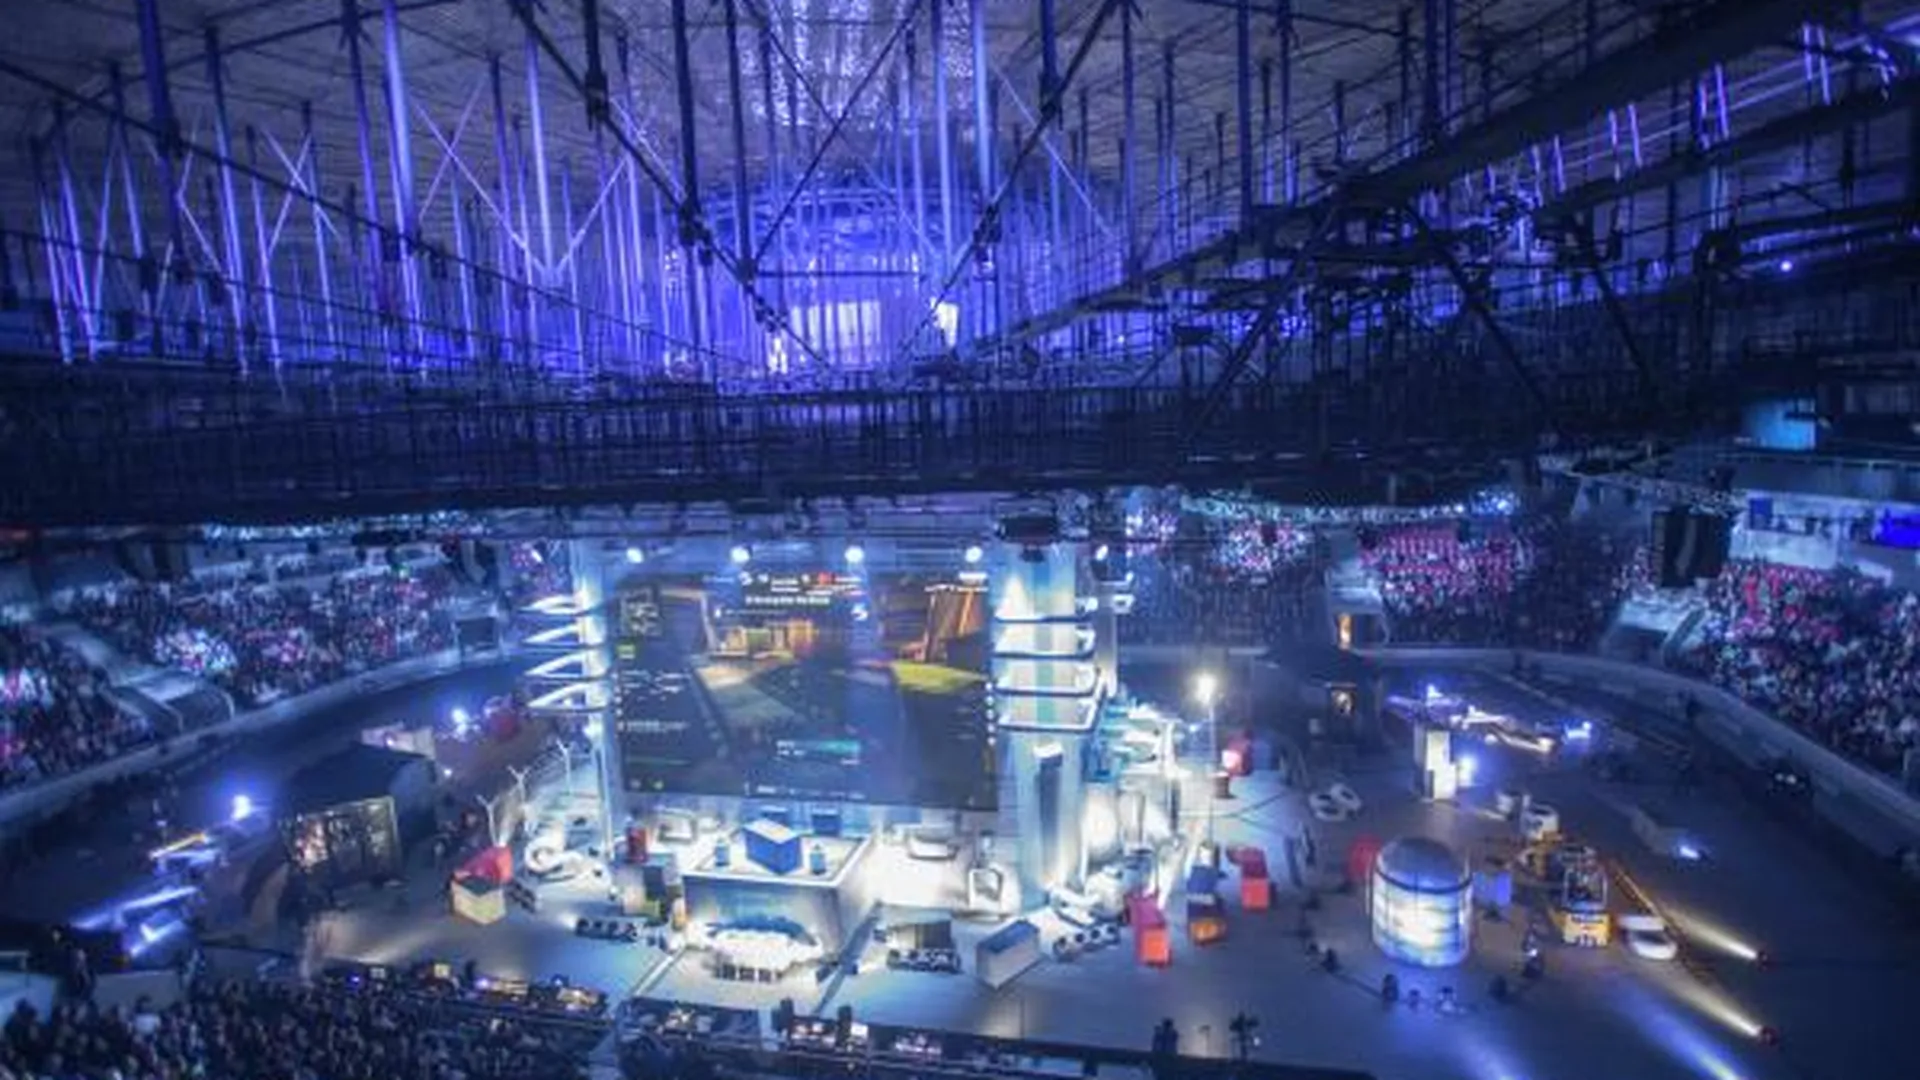 Киберспортивный турнир EPICENTER 2017 CS: GO в СК «Юбилейный» в Санкт-Петербурге.